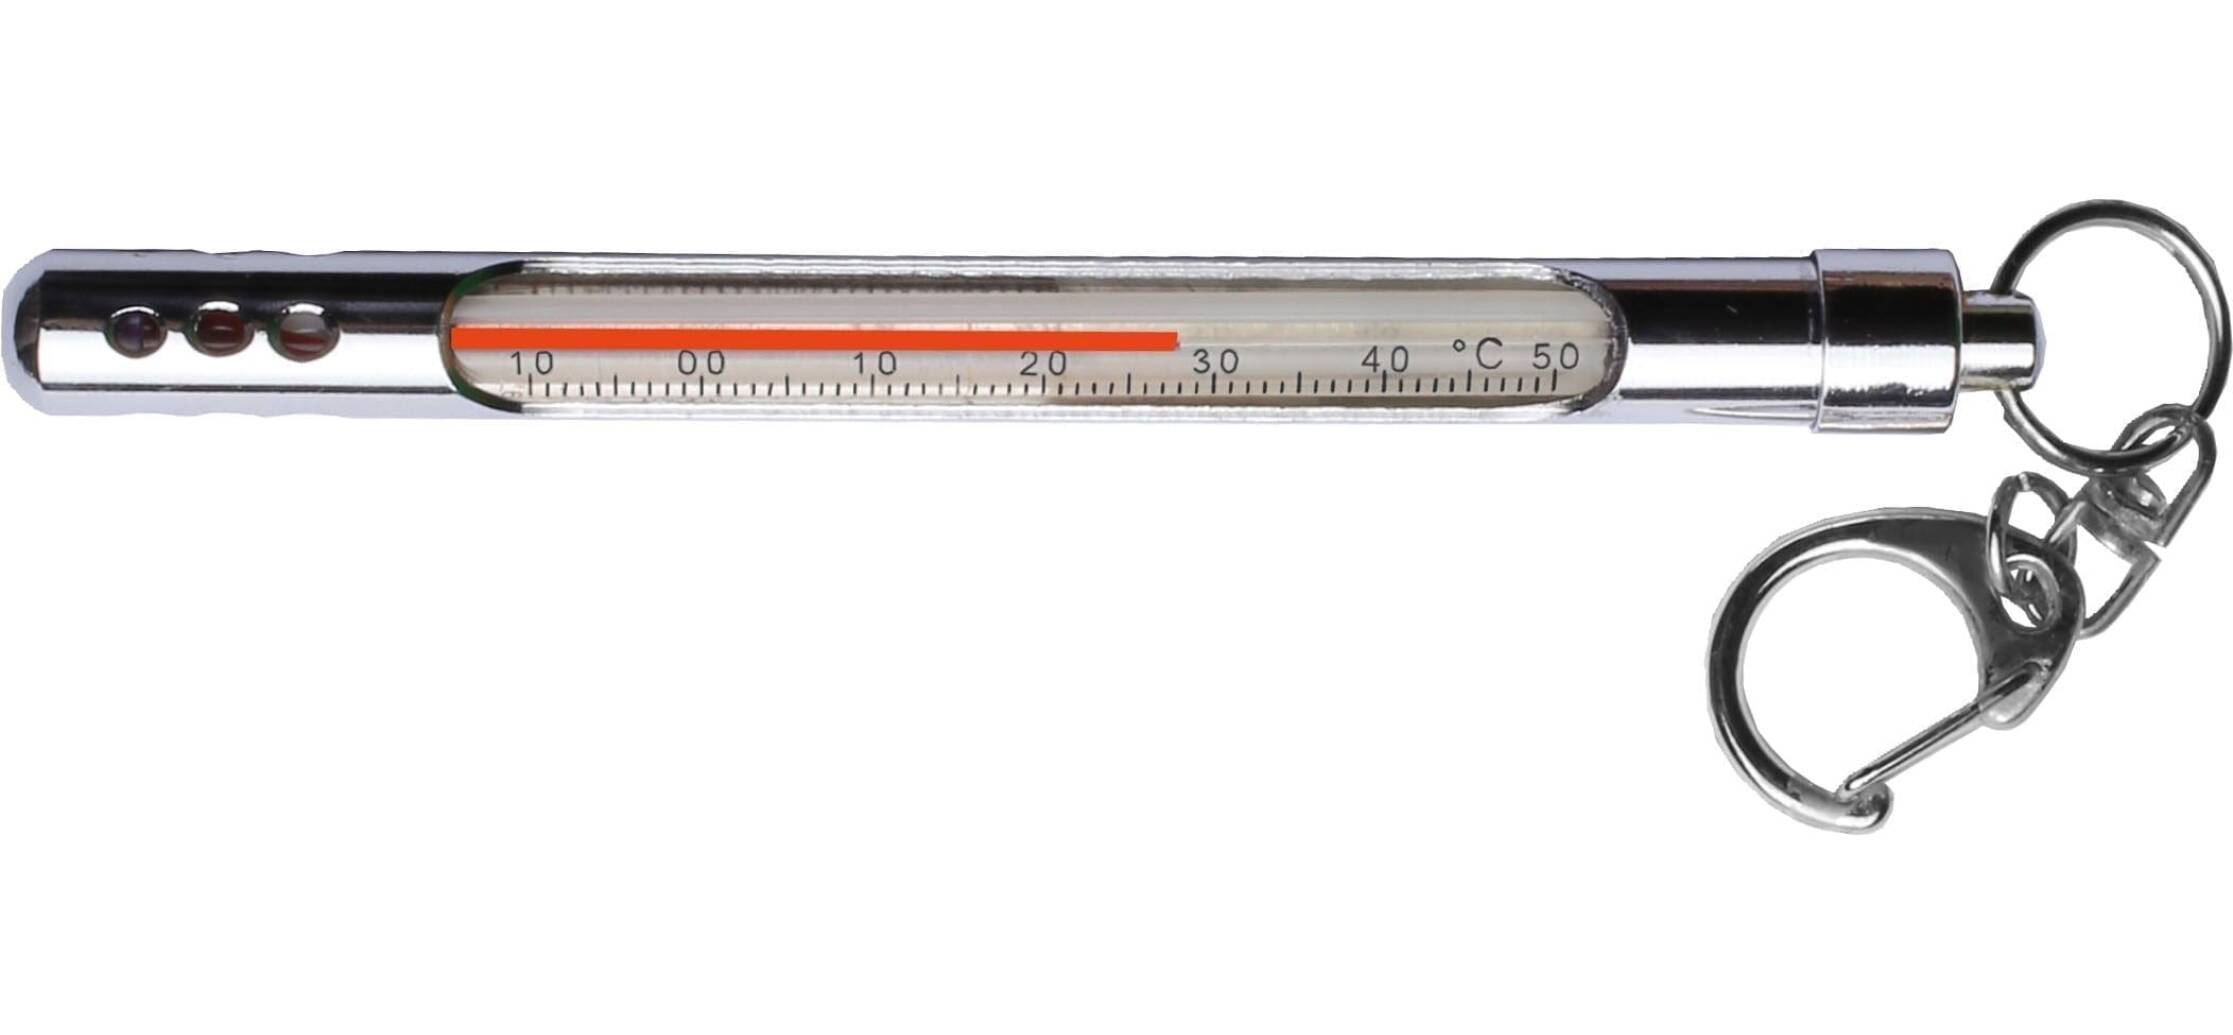 Klassisk termometer i rostfritt. Skala -10 till +50°C. Avläsning i både Celsius och Fahrenheit. Mäter temperaturen i luft eller vatten.